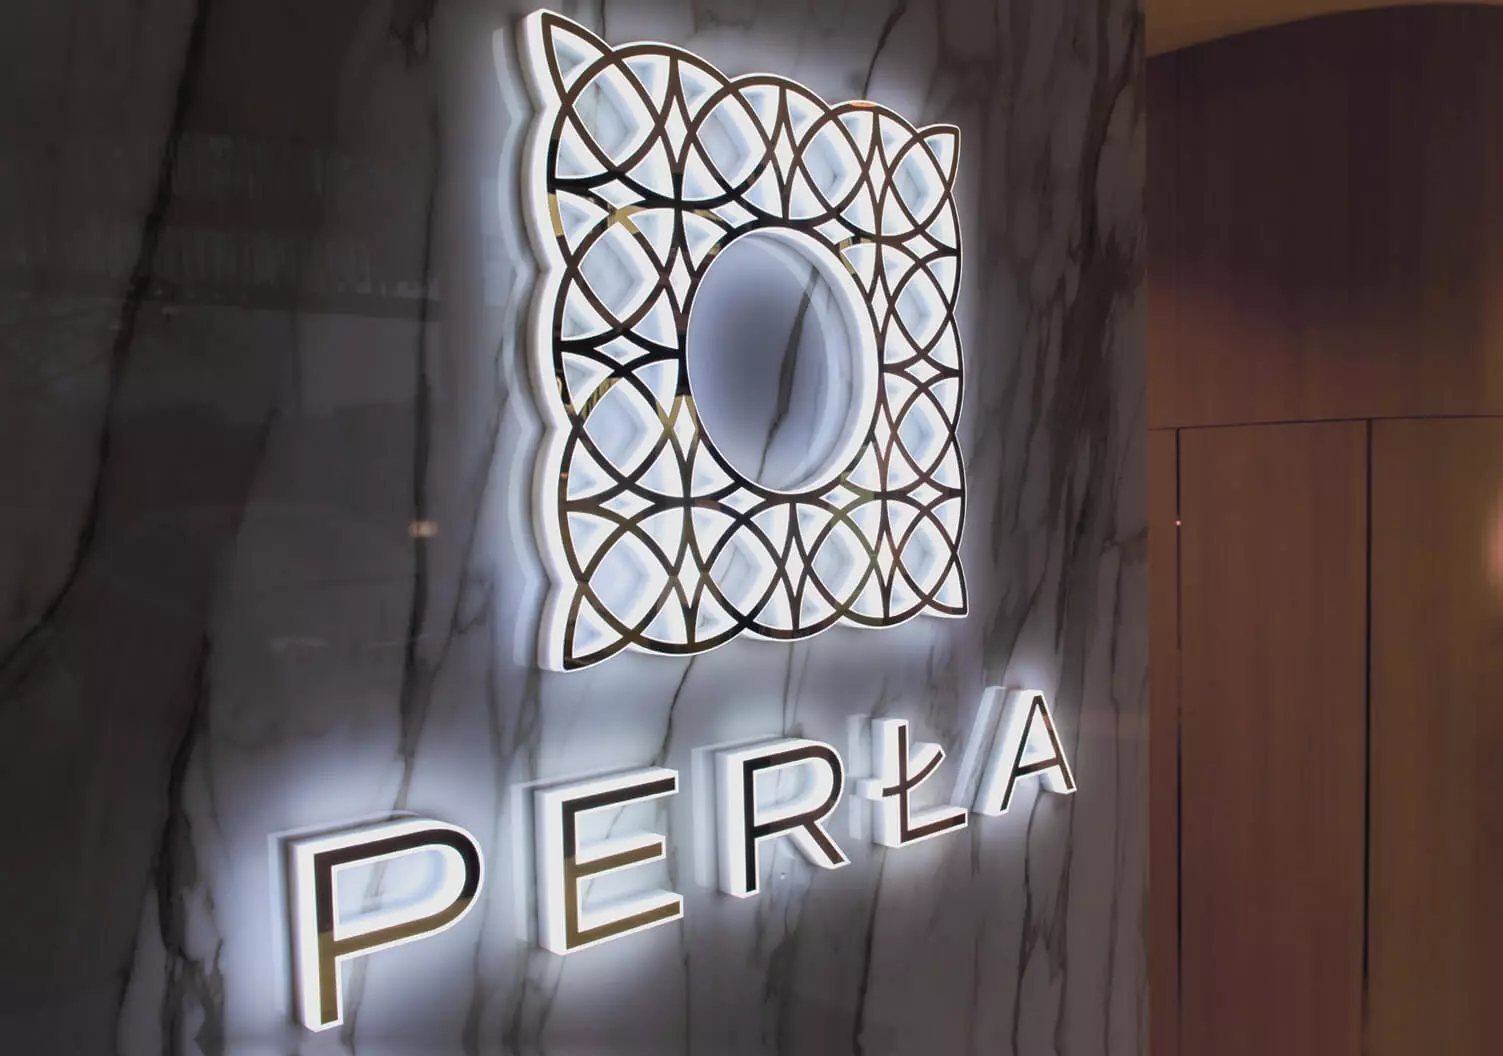 Perla - Logo illuminato con lettere a LED illuminate lateralmente